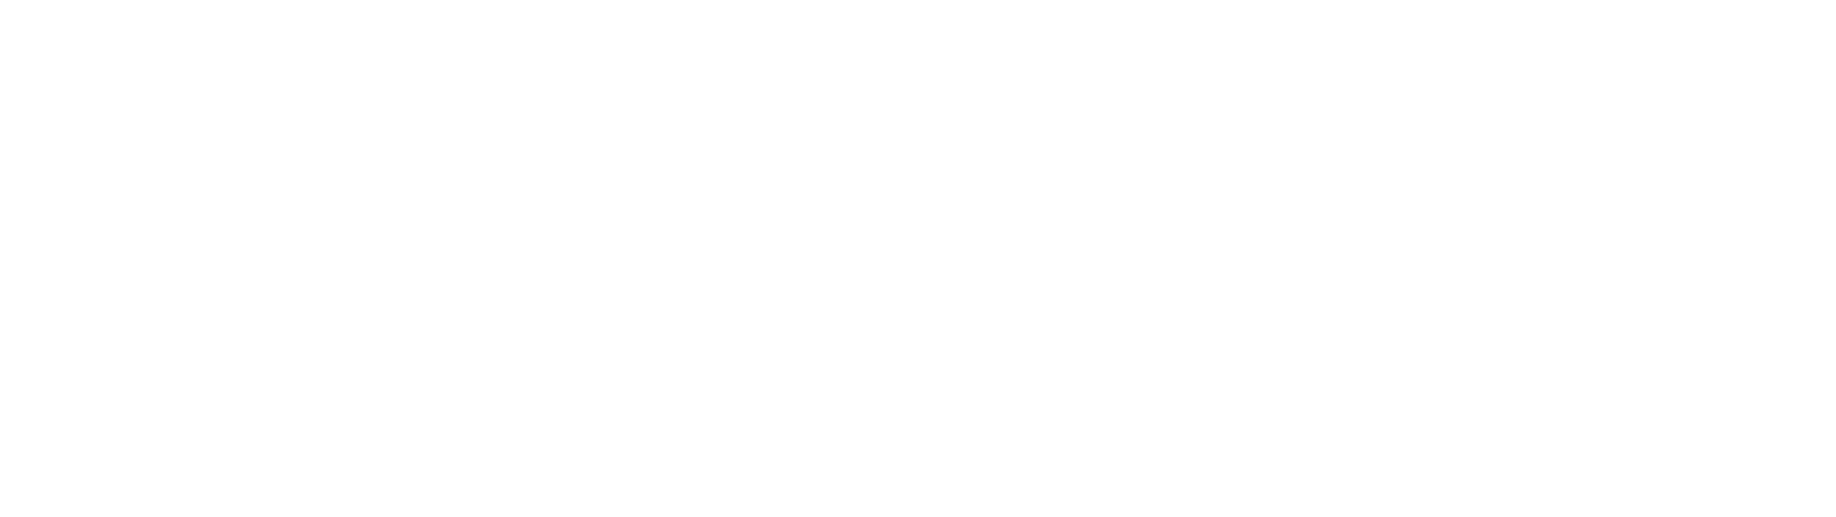 CNC TITANS